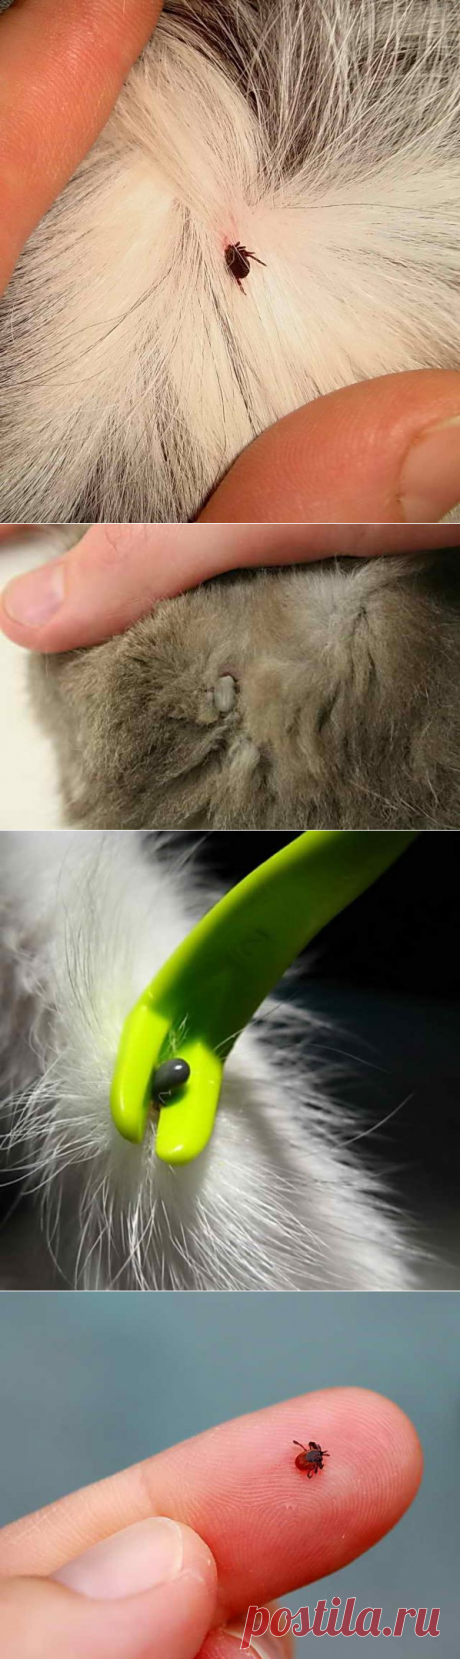 У кошки клещ, симптомы укуса, как вытащить, чтобы не обломить голову паразита